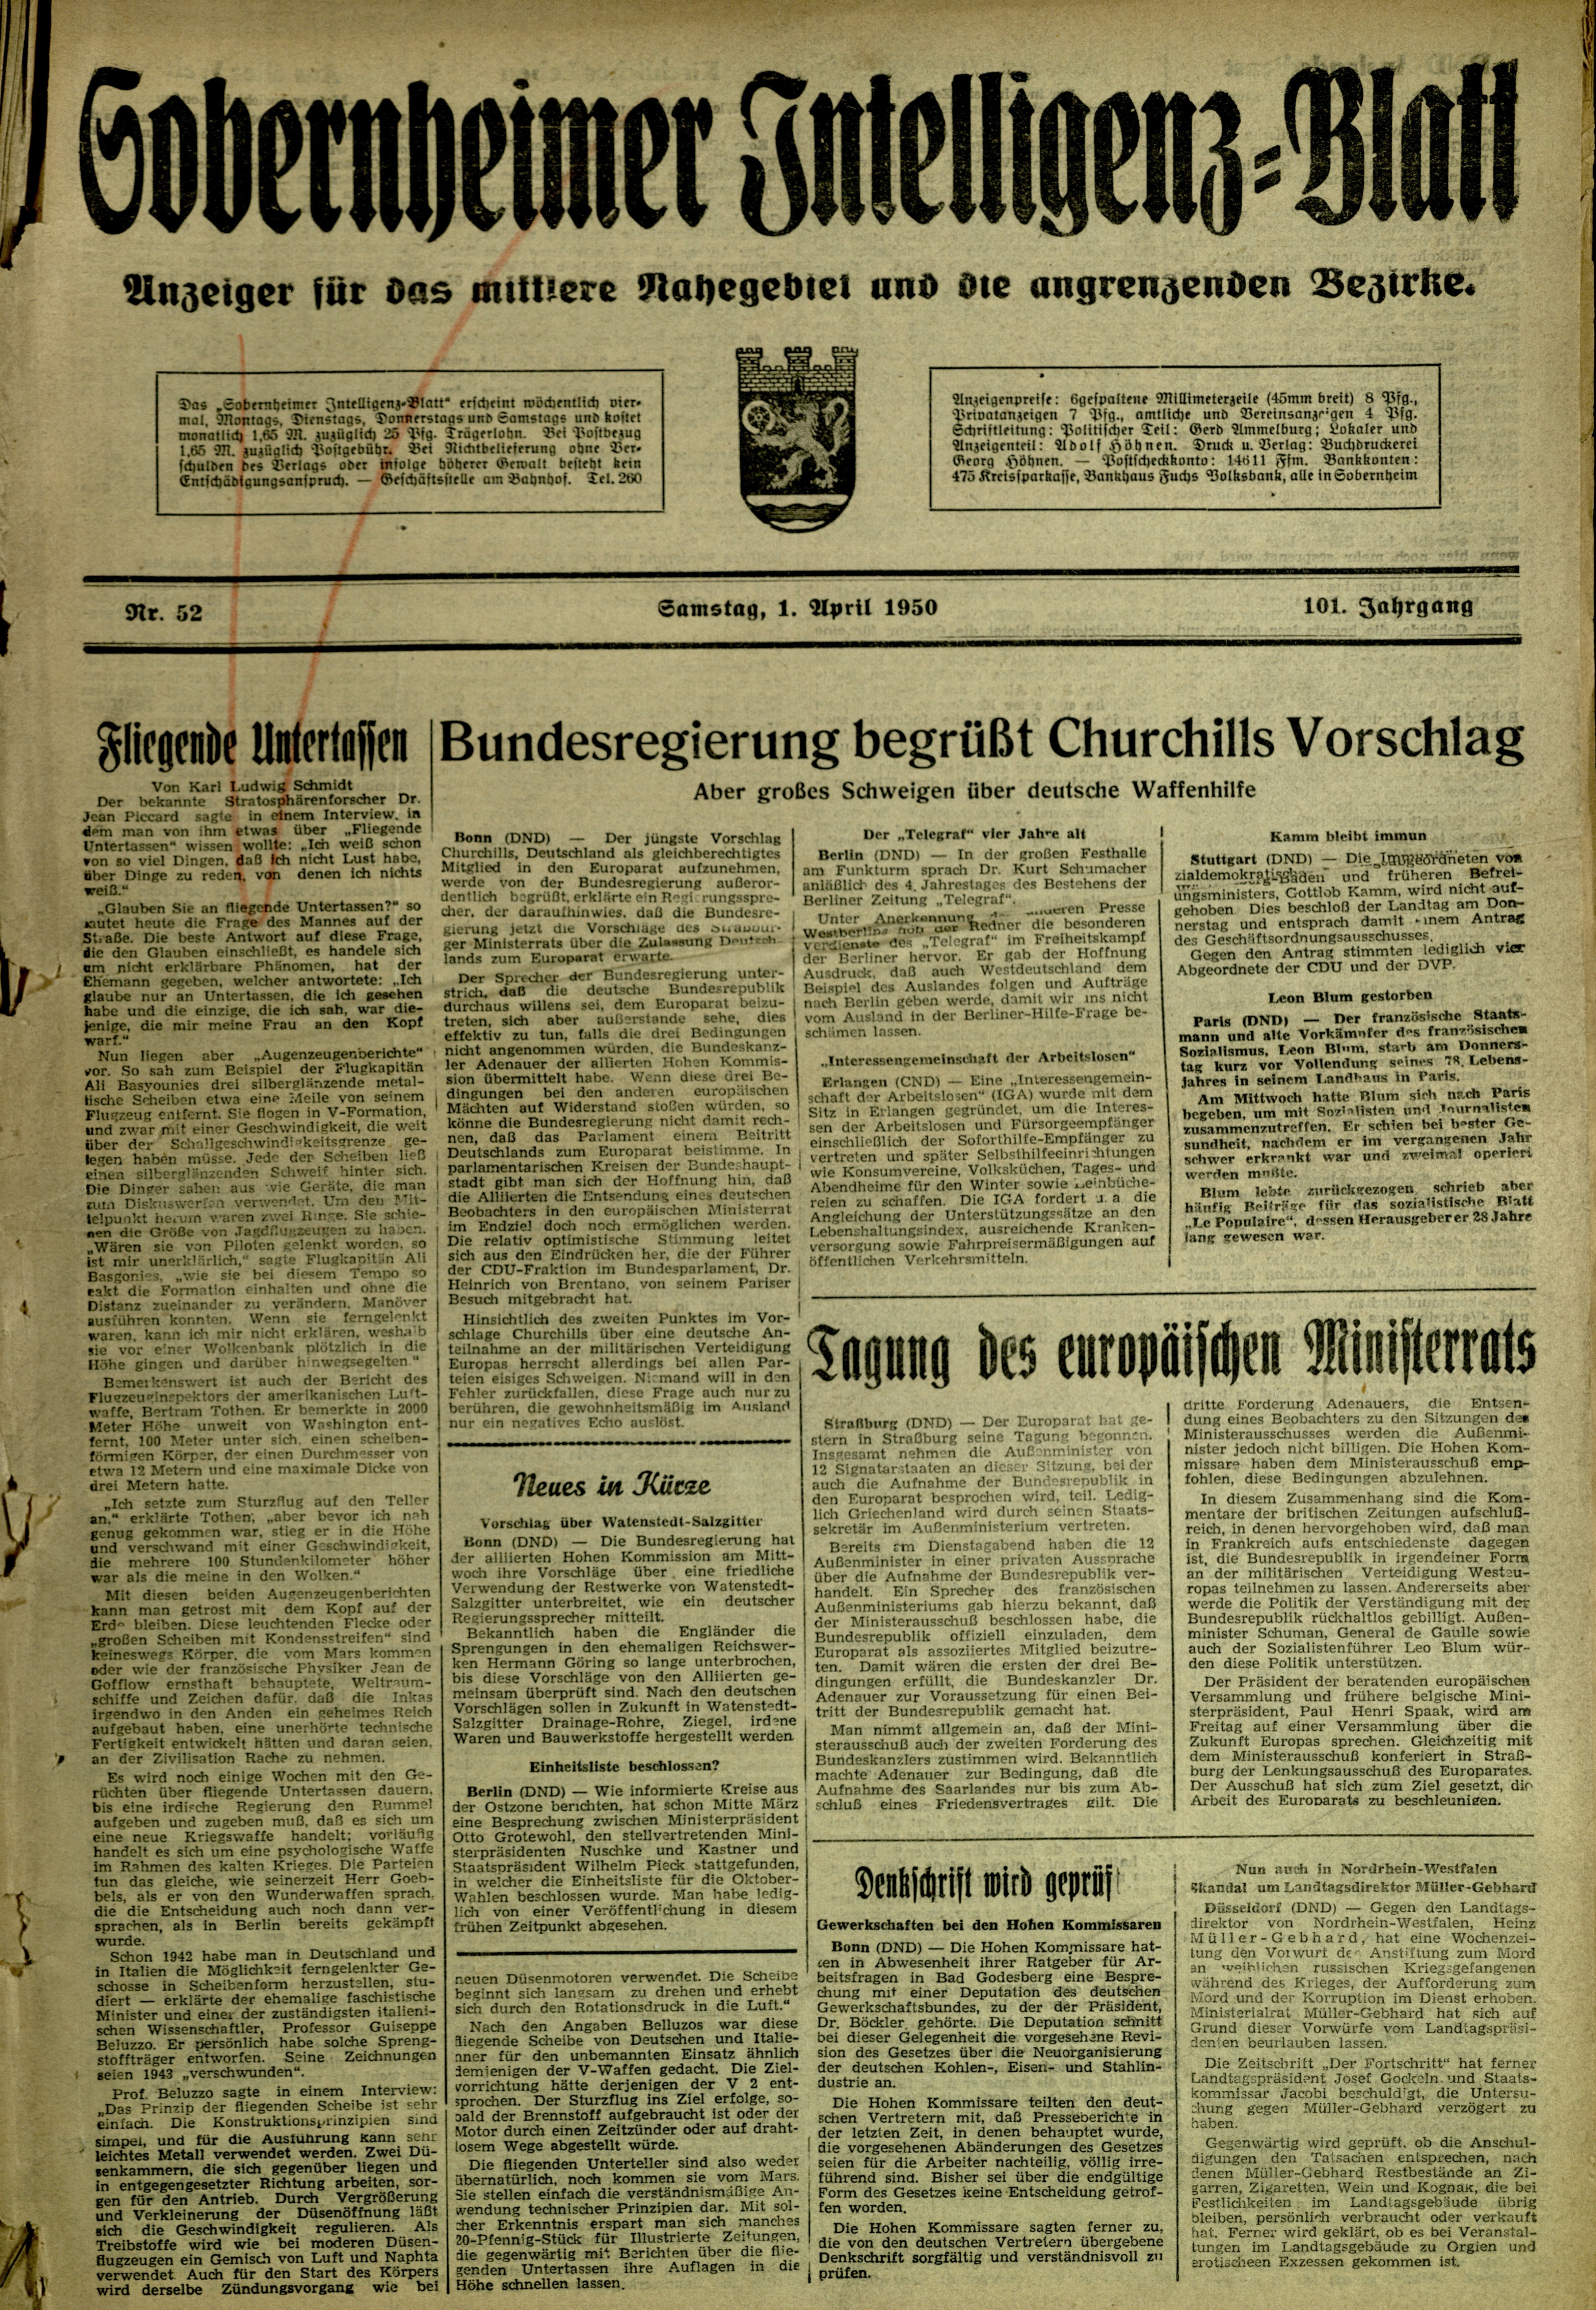 Zeitung: Sobernheimer Intelligenzblatt; April 1950, Jg. 101 Nr. 52 (Heimatmuseum Bad Sobernheim CC BY-NC-SA)